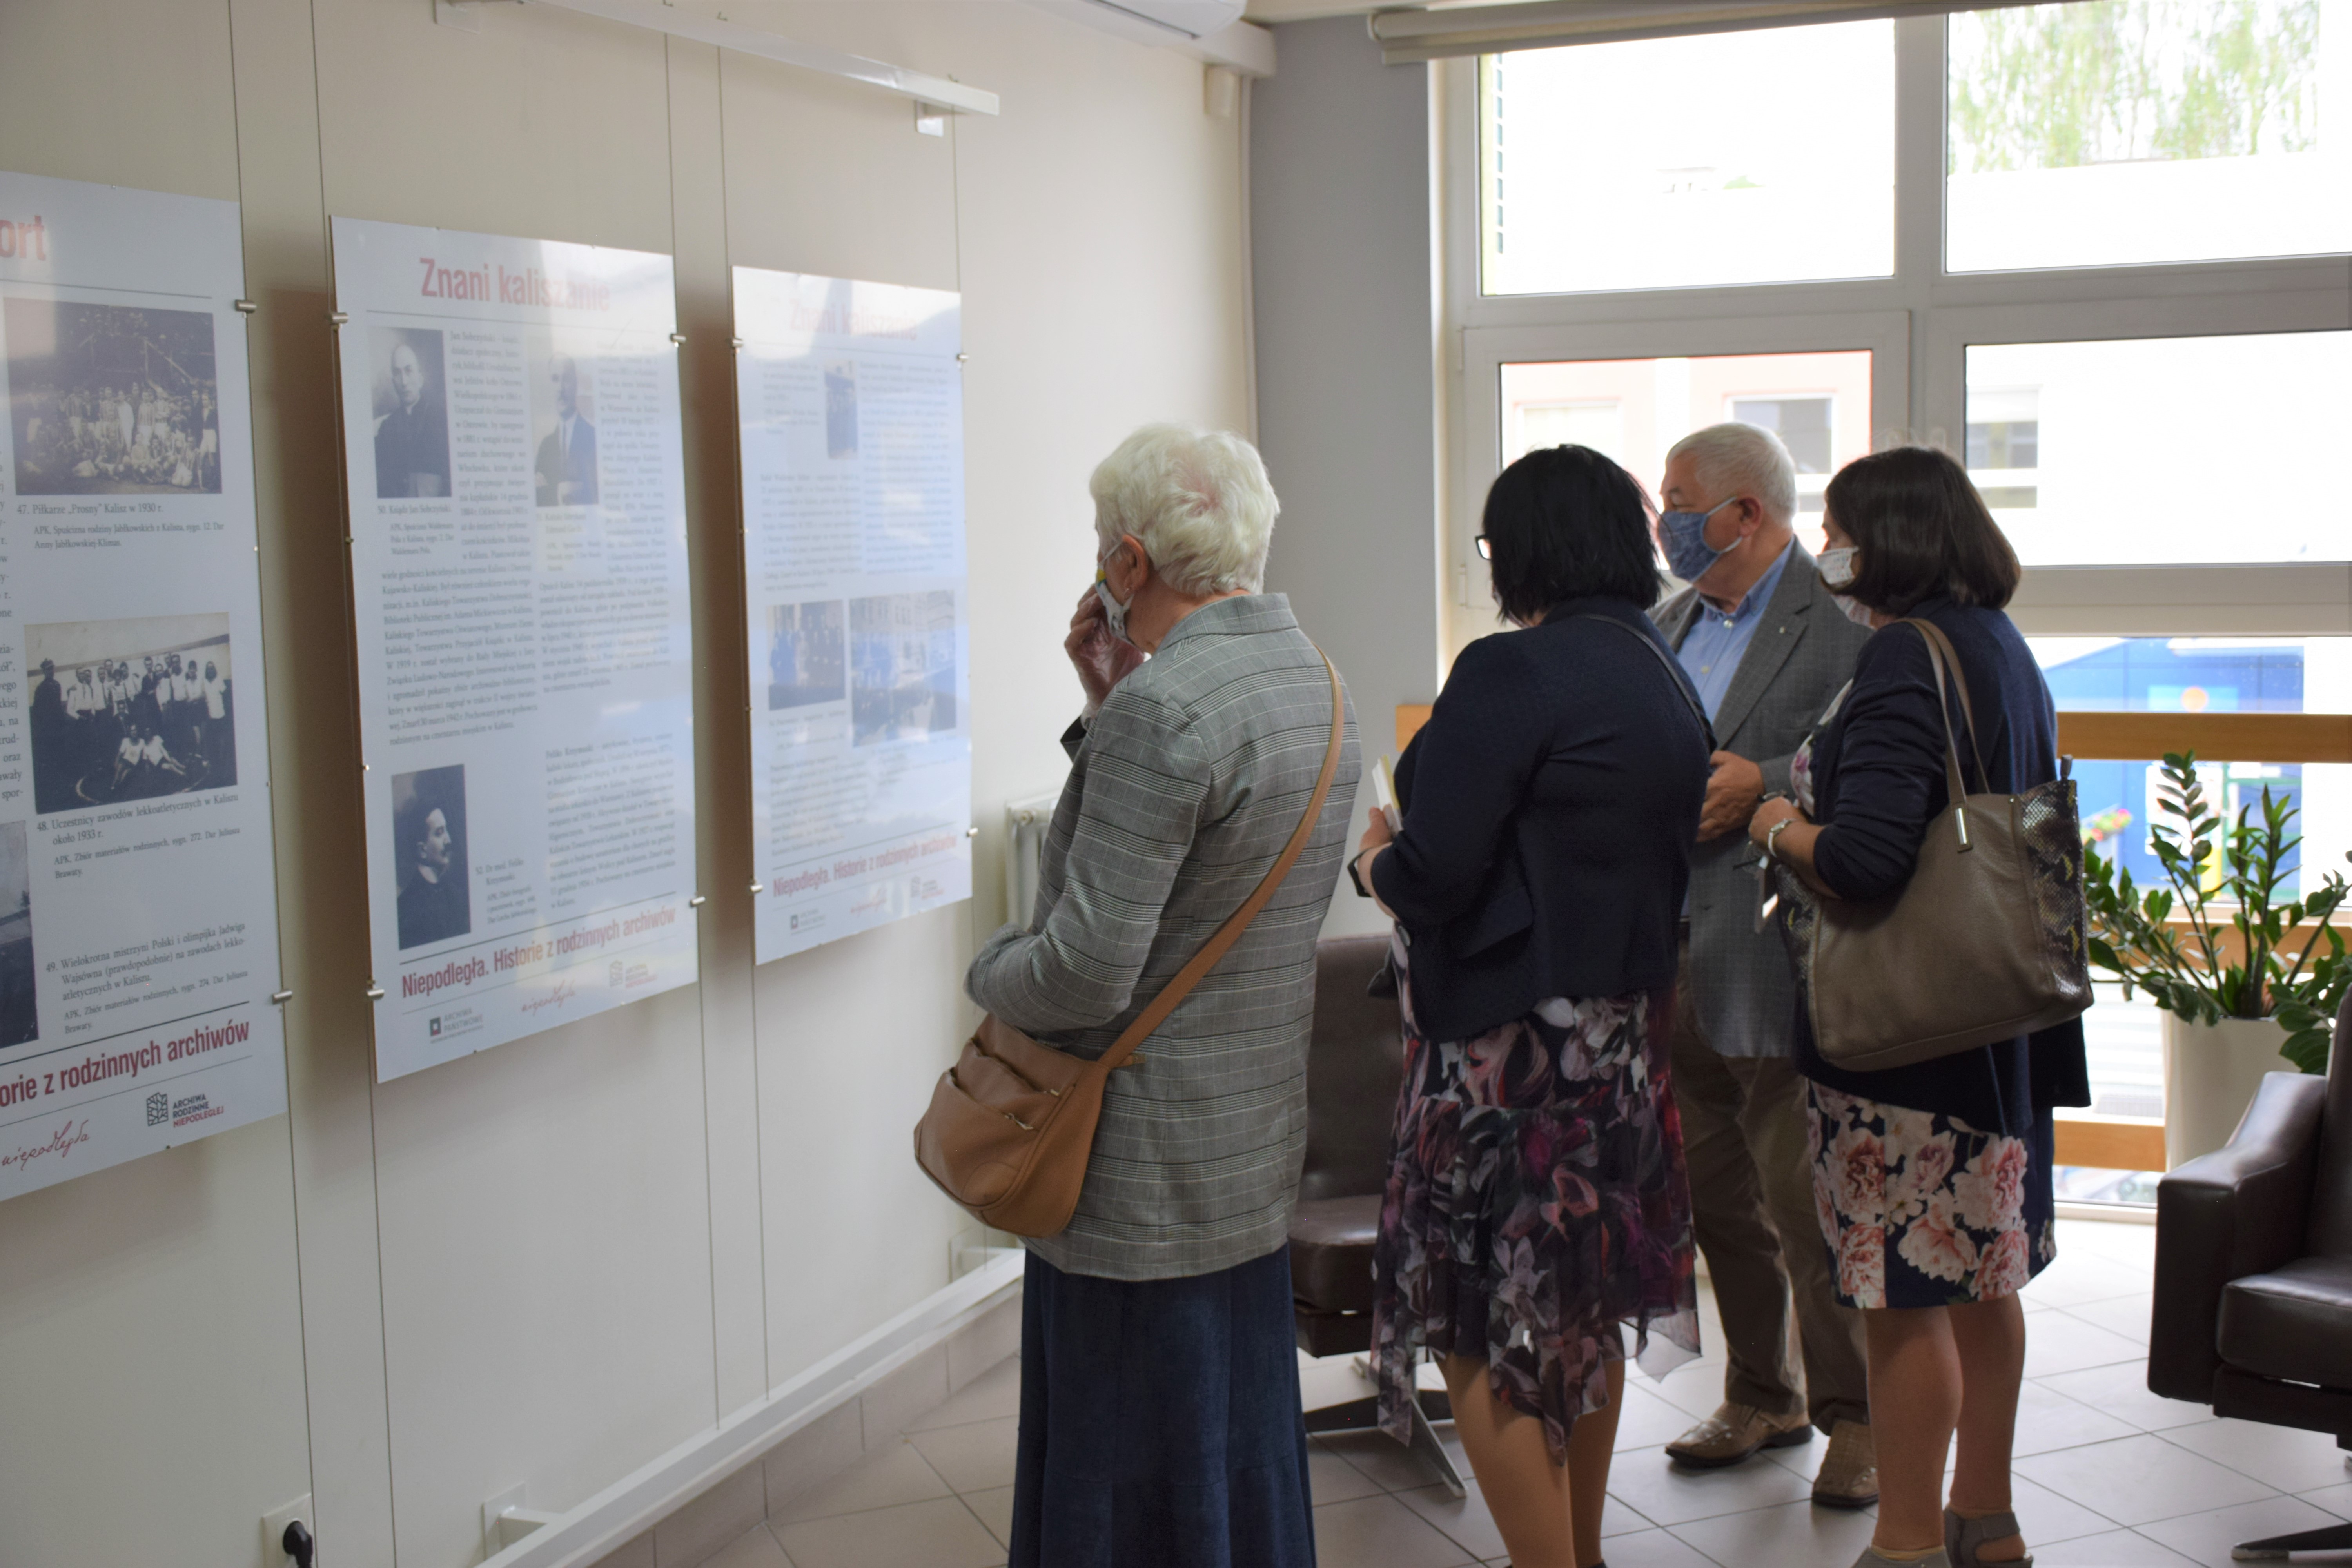 Grupa gości wydarzenia ogląda zainstalowane przy ścianie plansze wystawy.